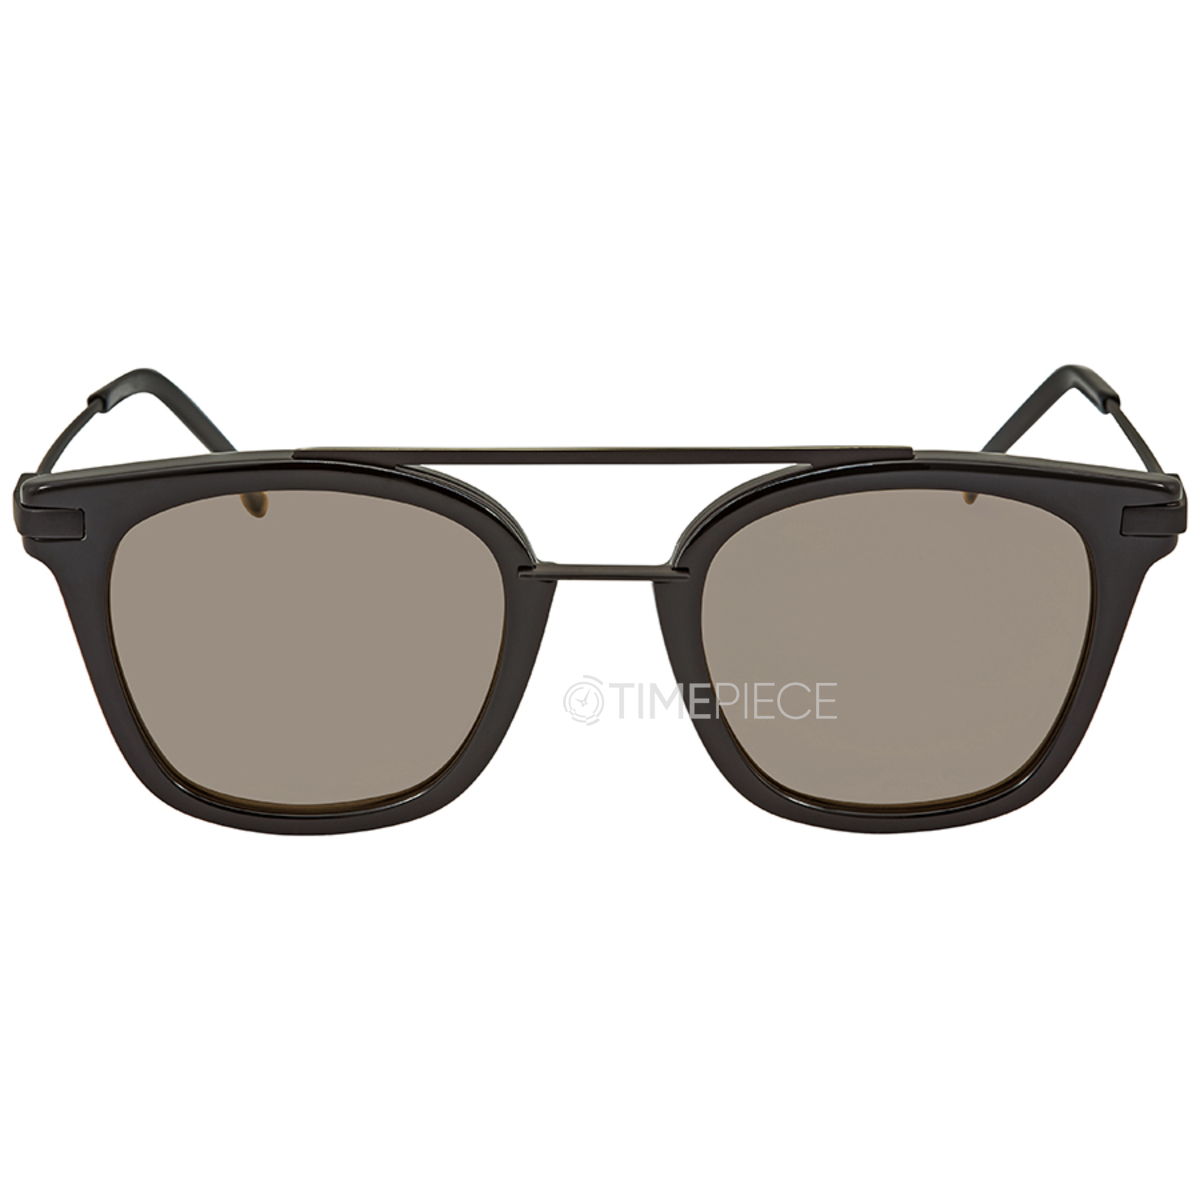 Fendi FF 0222/S PJP/T4 55 Mens Sunglasses